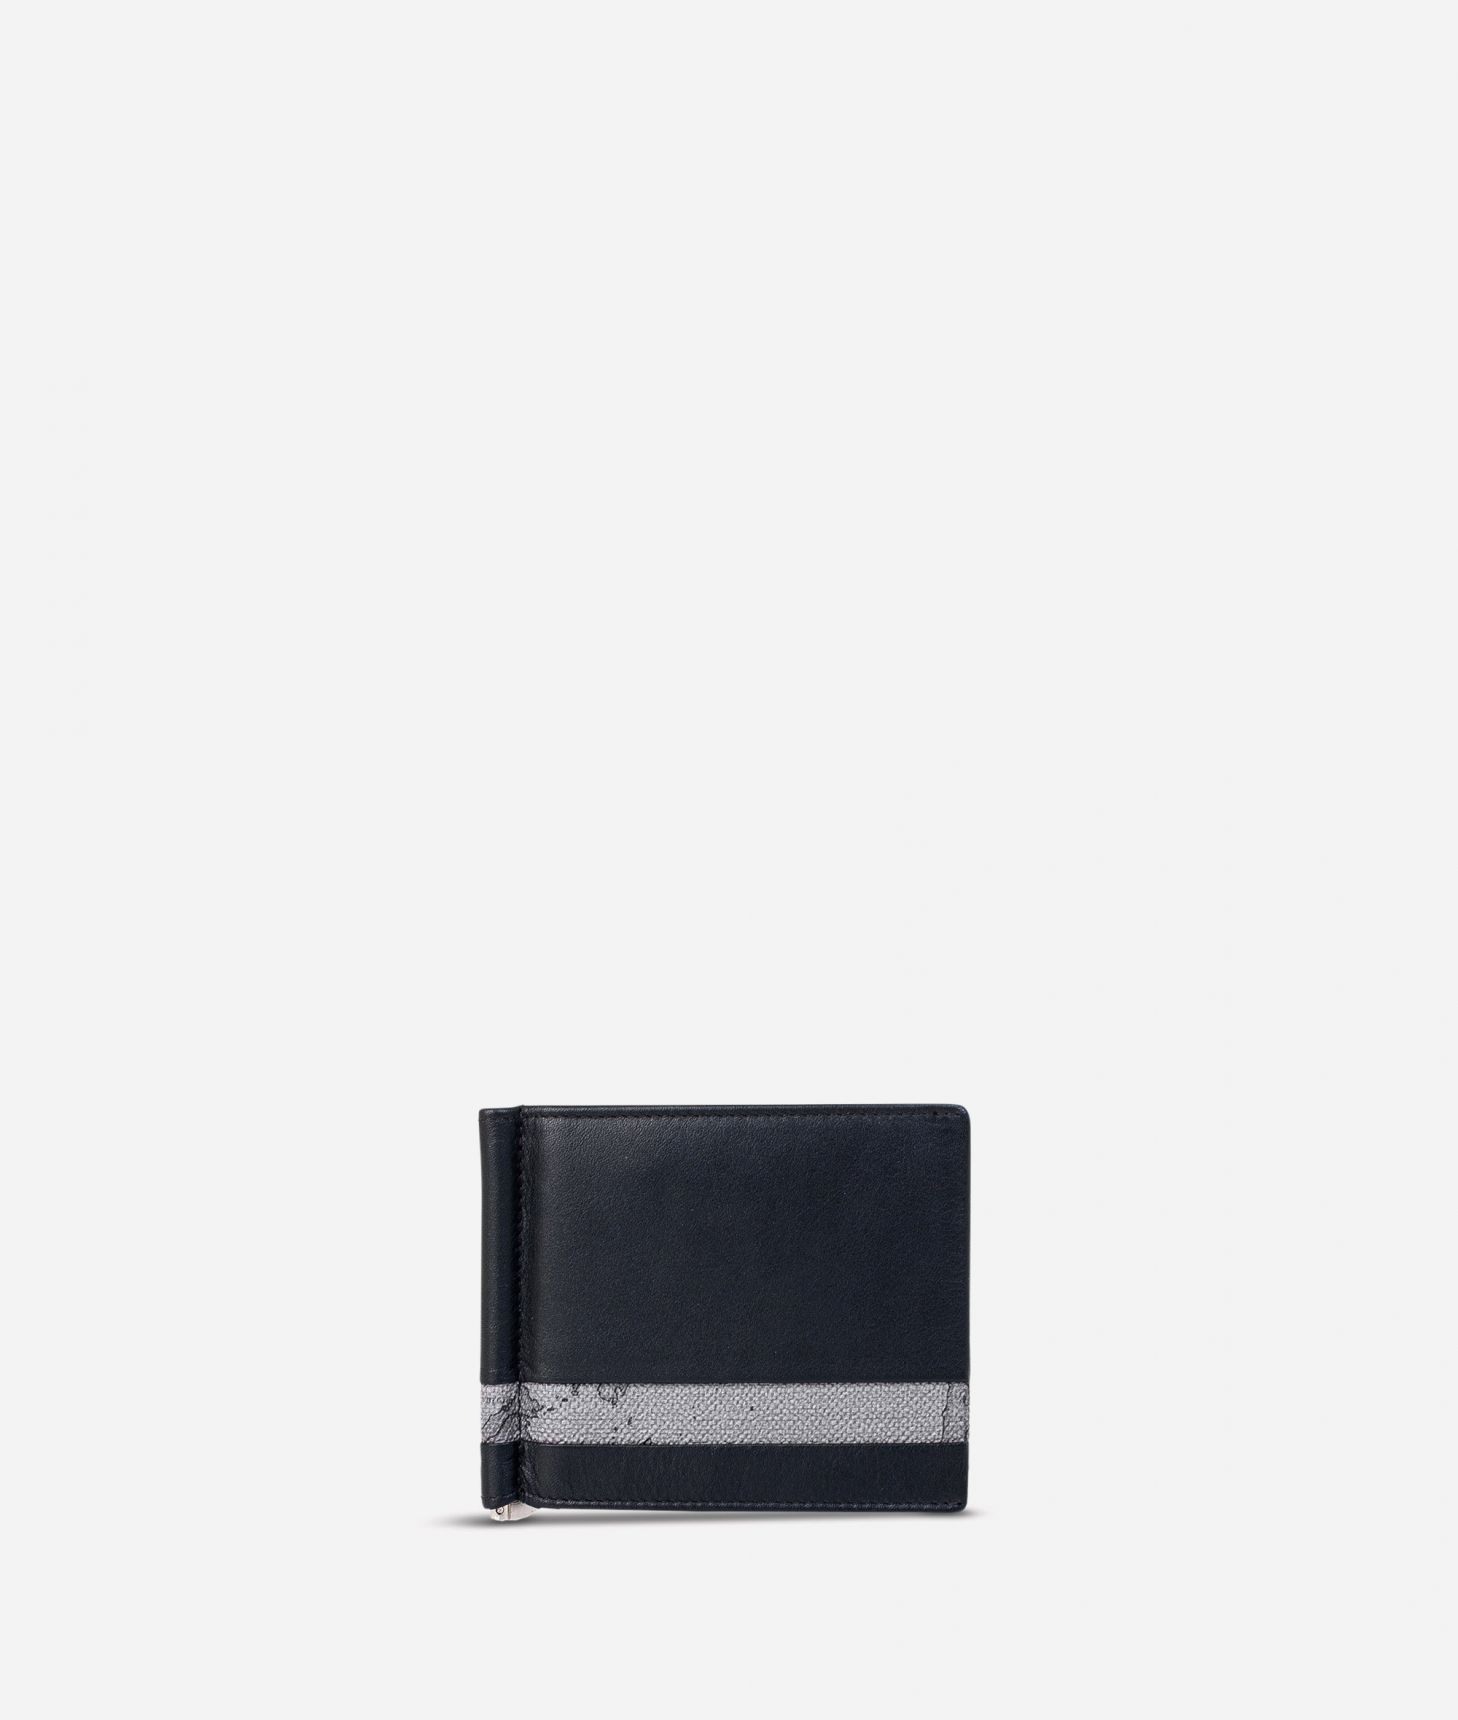 Billfold wallet Geo Dark fabric trims,front